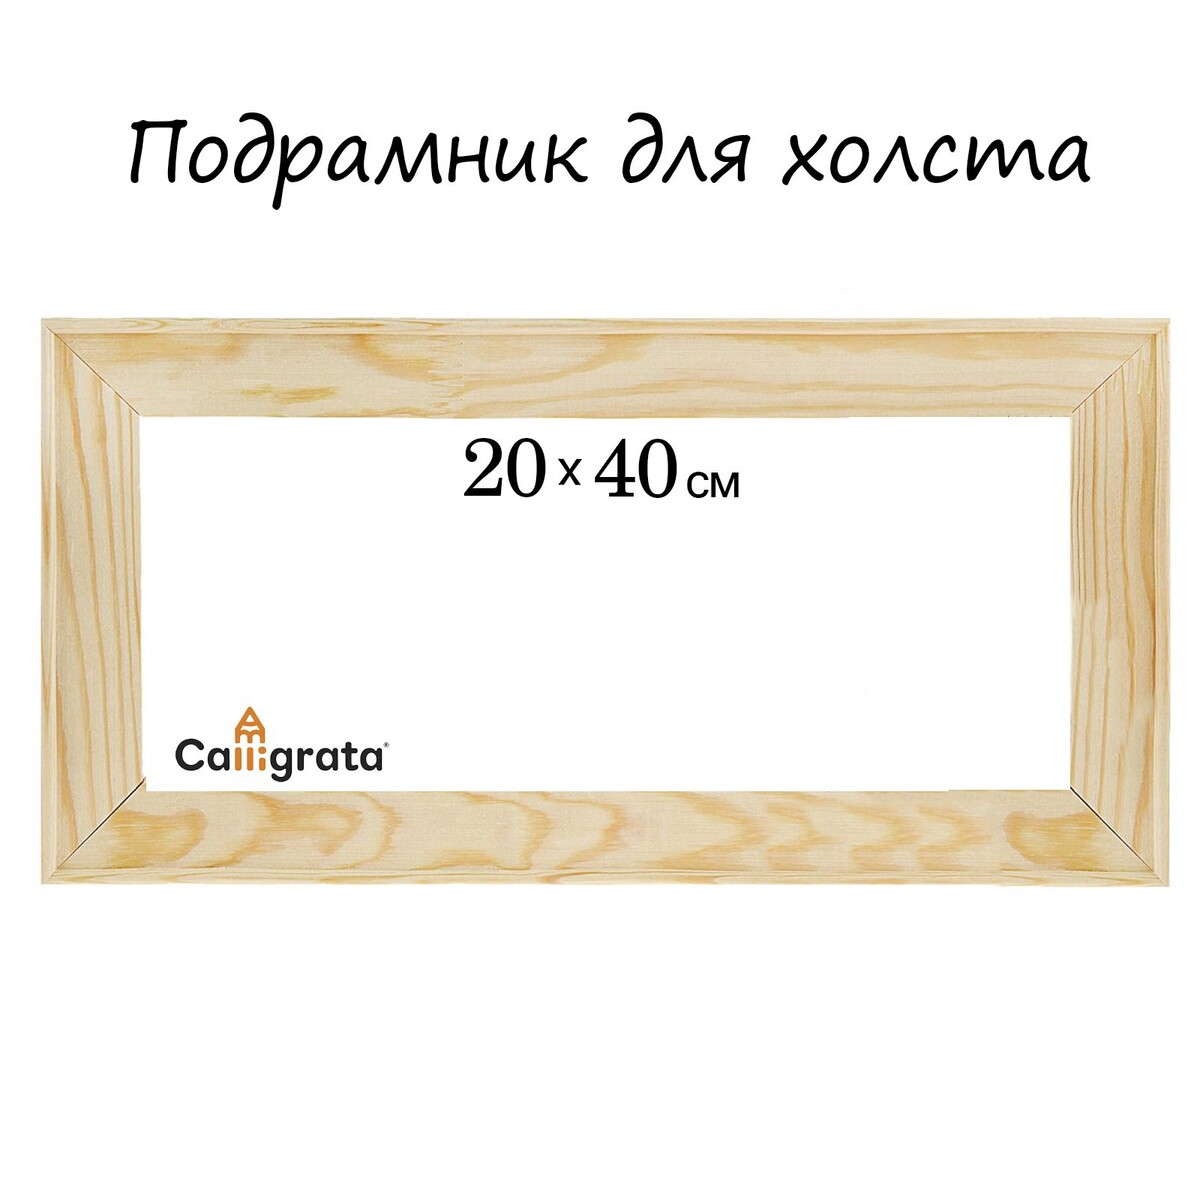 Подрамник для холста calligrata, 1.8 x 20 x 40 см, ширина рамы 36 мм, сосна подрамник для холста calligrata 1 8 x 20 x 40 см ширина рамы 36 мм сосна